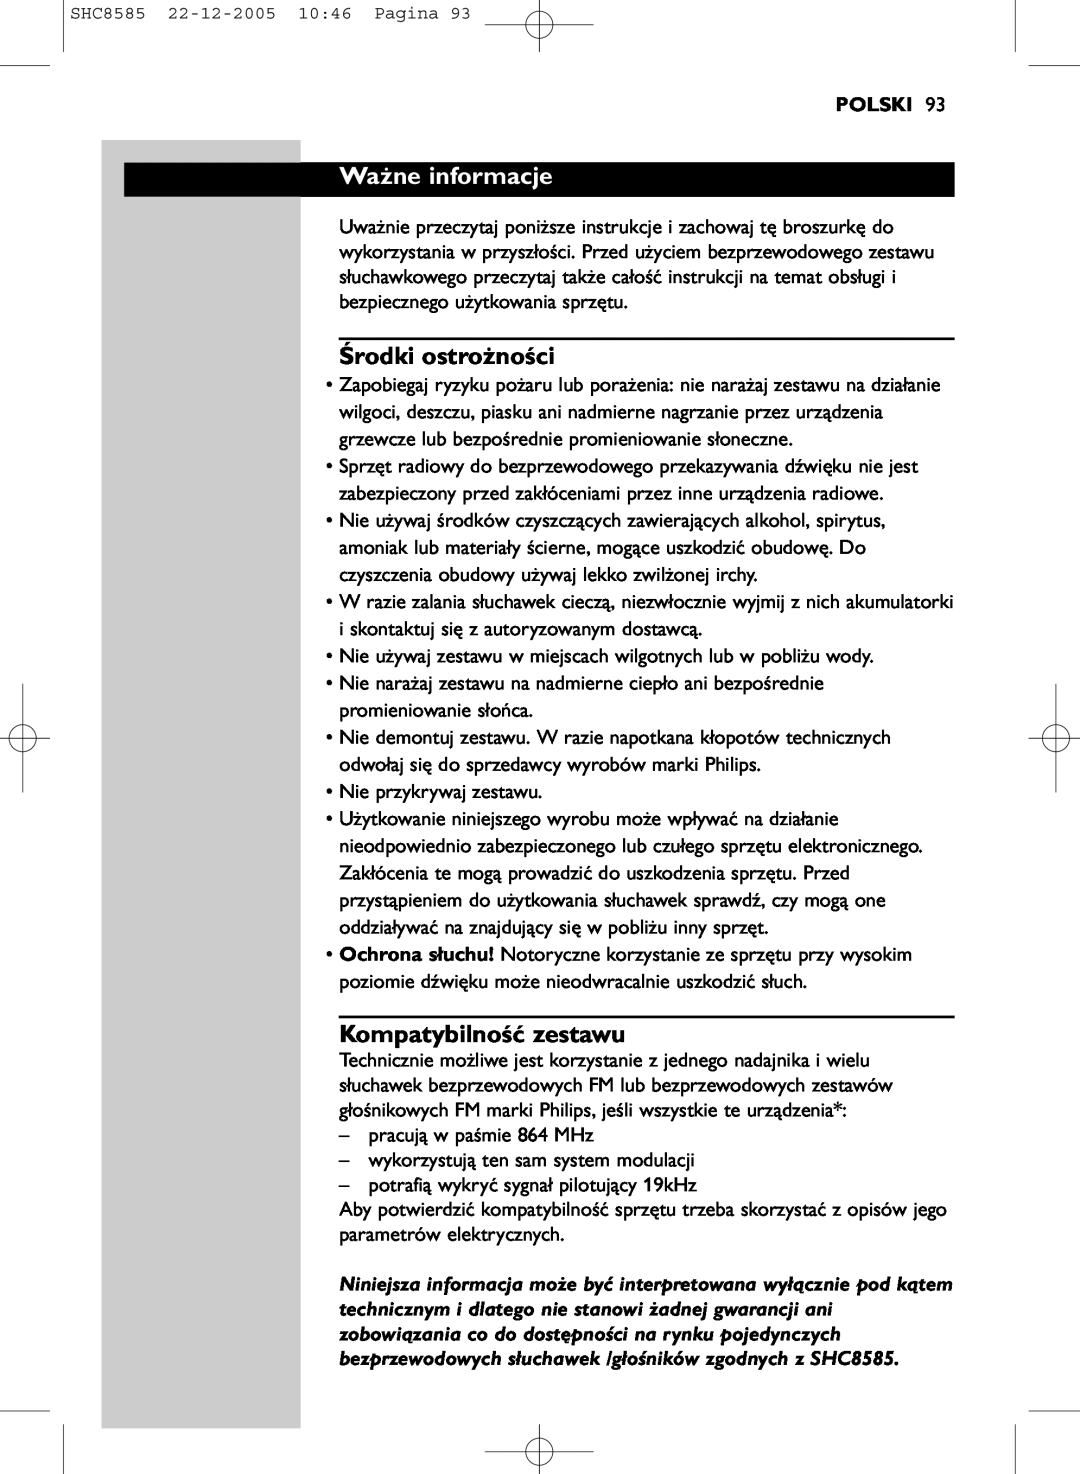 Philips SHC8585/05 manual Ważne informacje, Środki ostrożności, Kompatybilność zestawu, Polski 